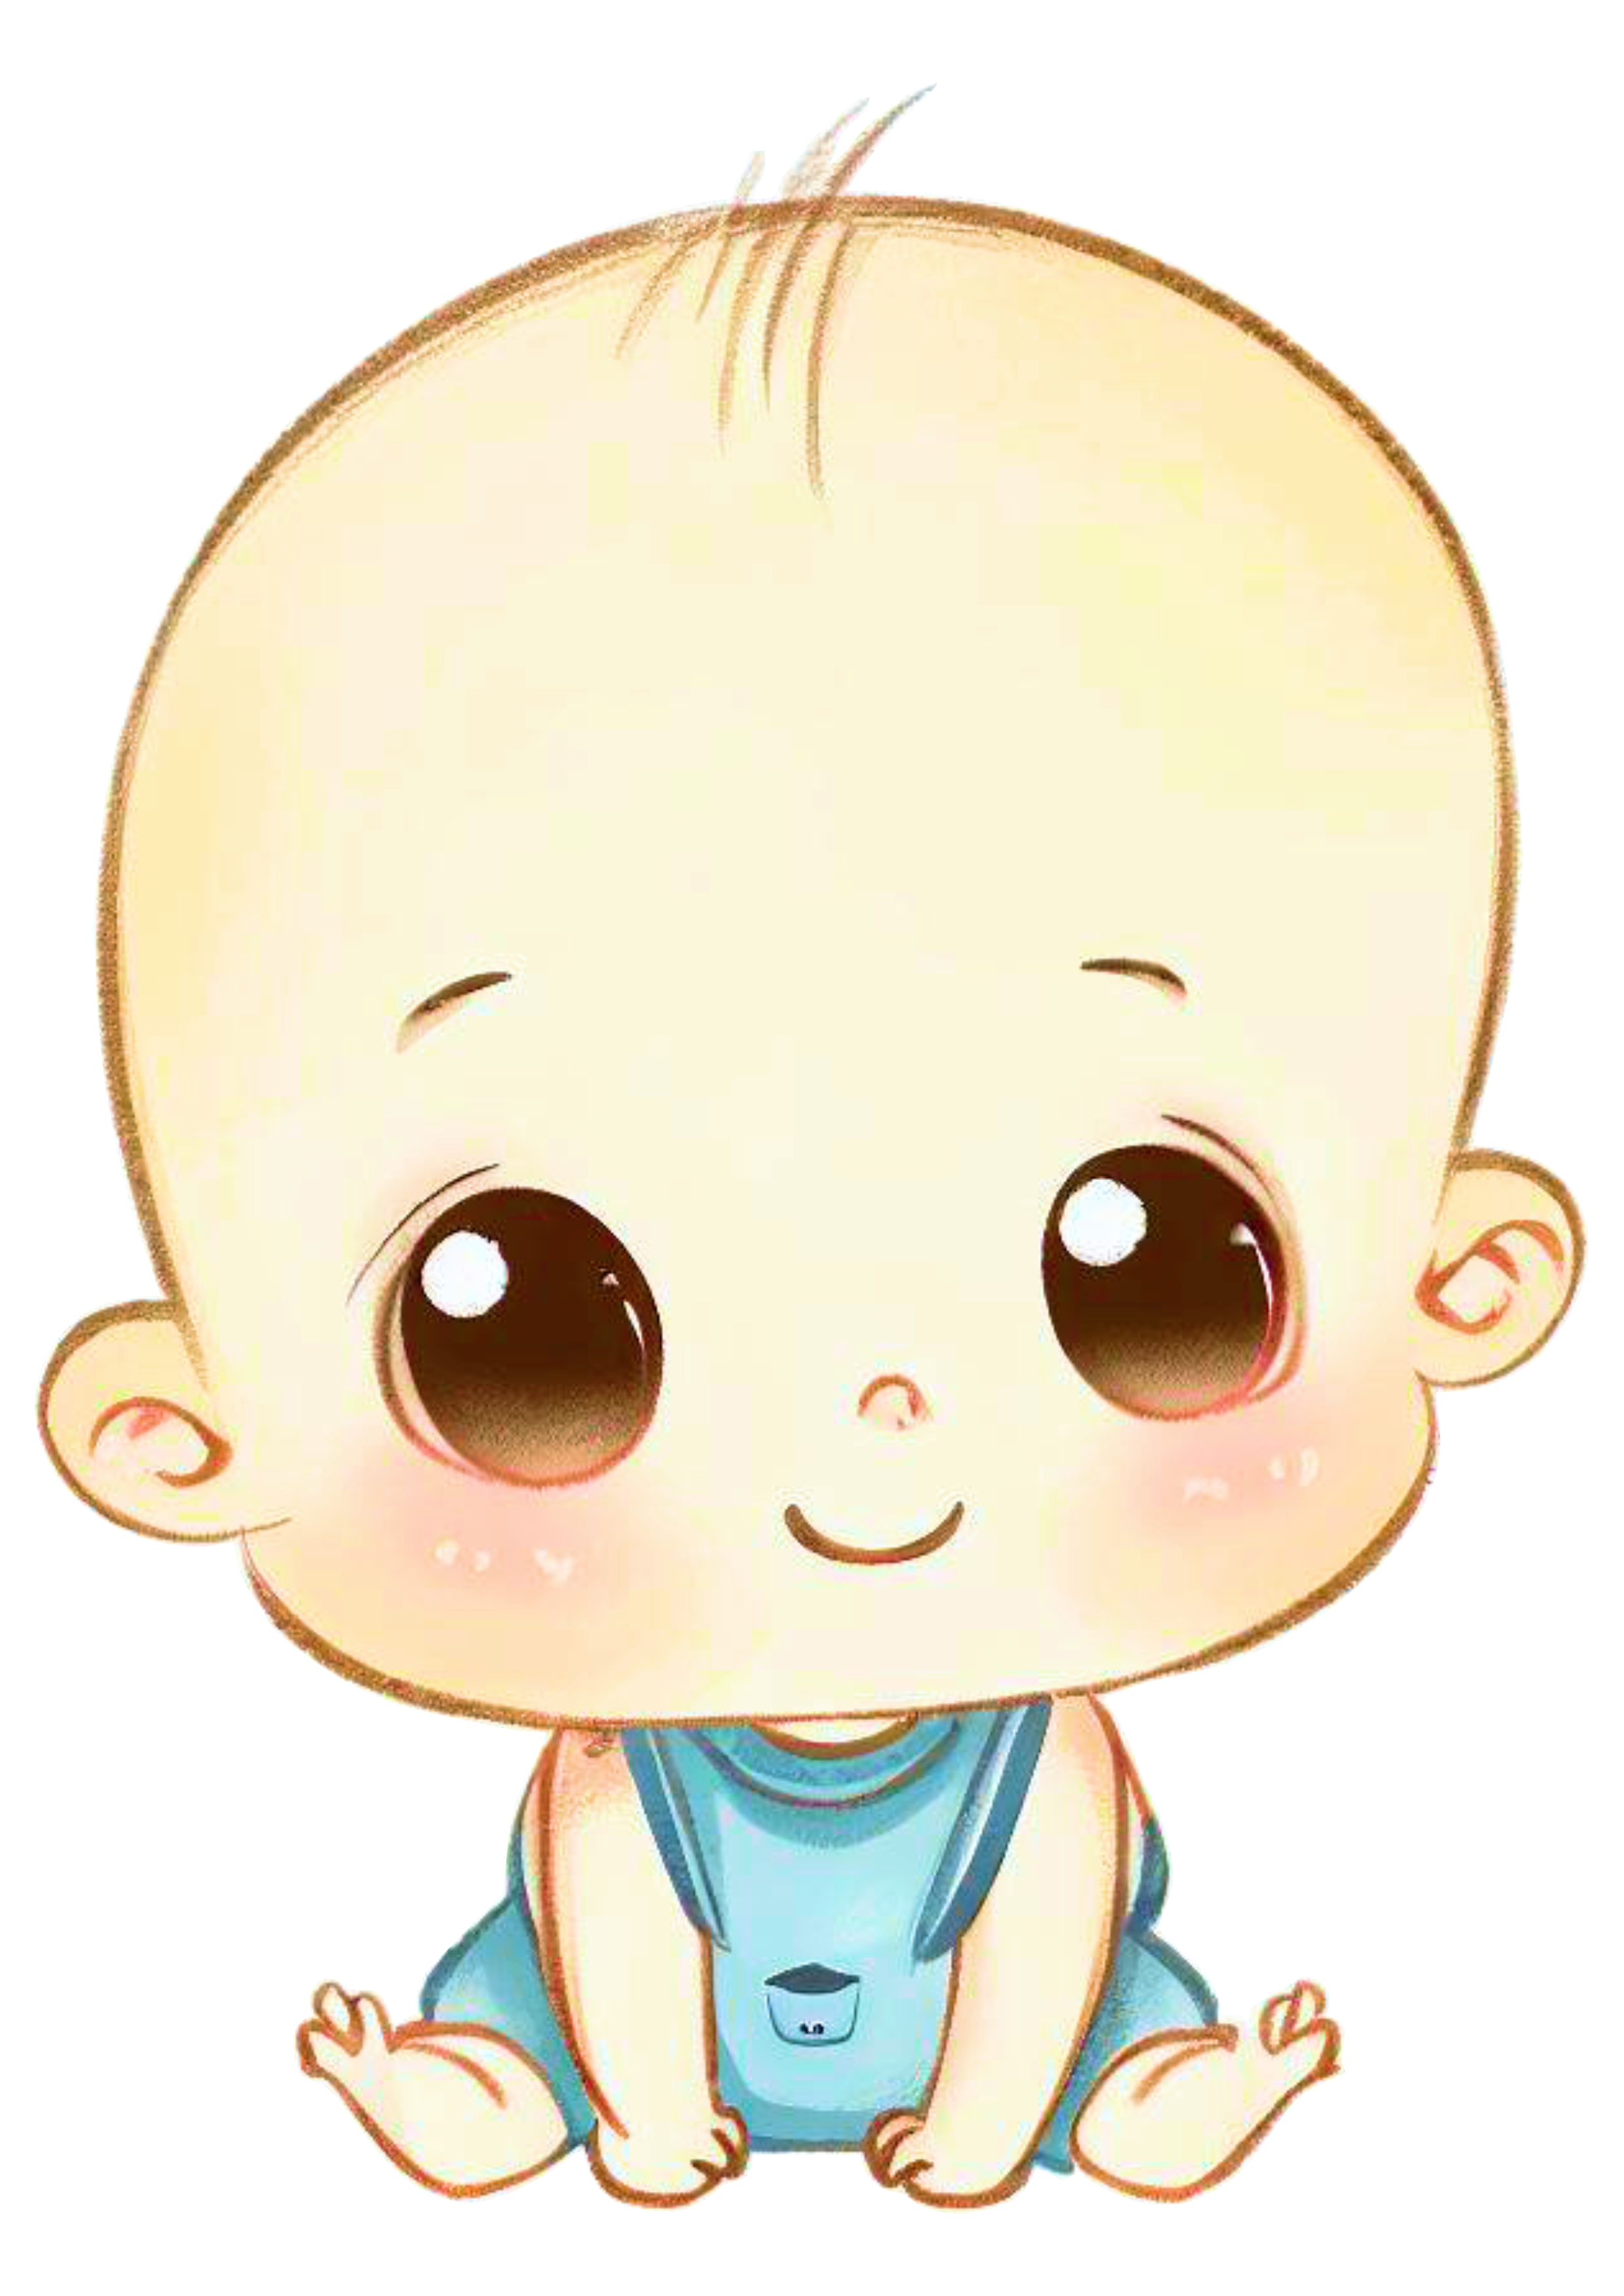 Bebê fofinho neném  desenho simples carequinha cabeçudo sapeca baby imagem sem fundo png